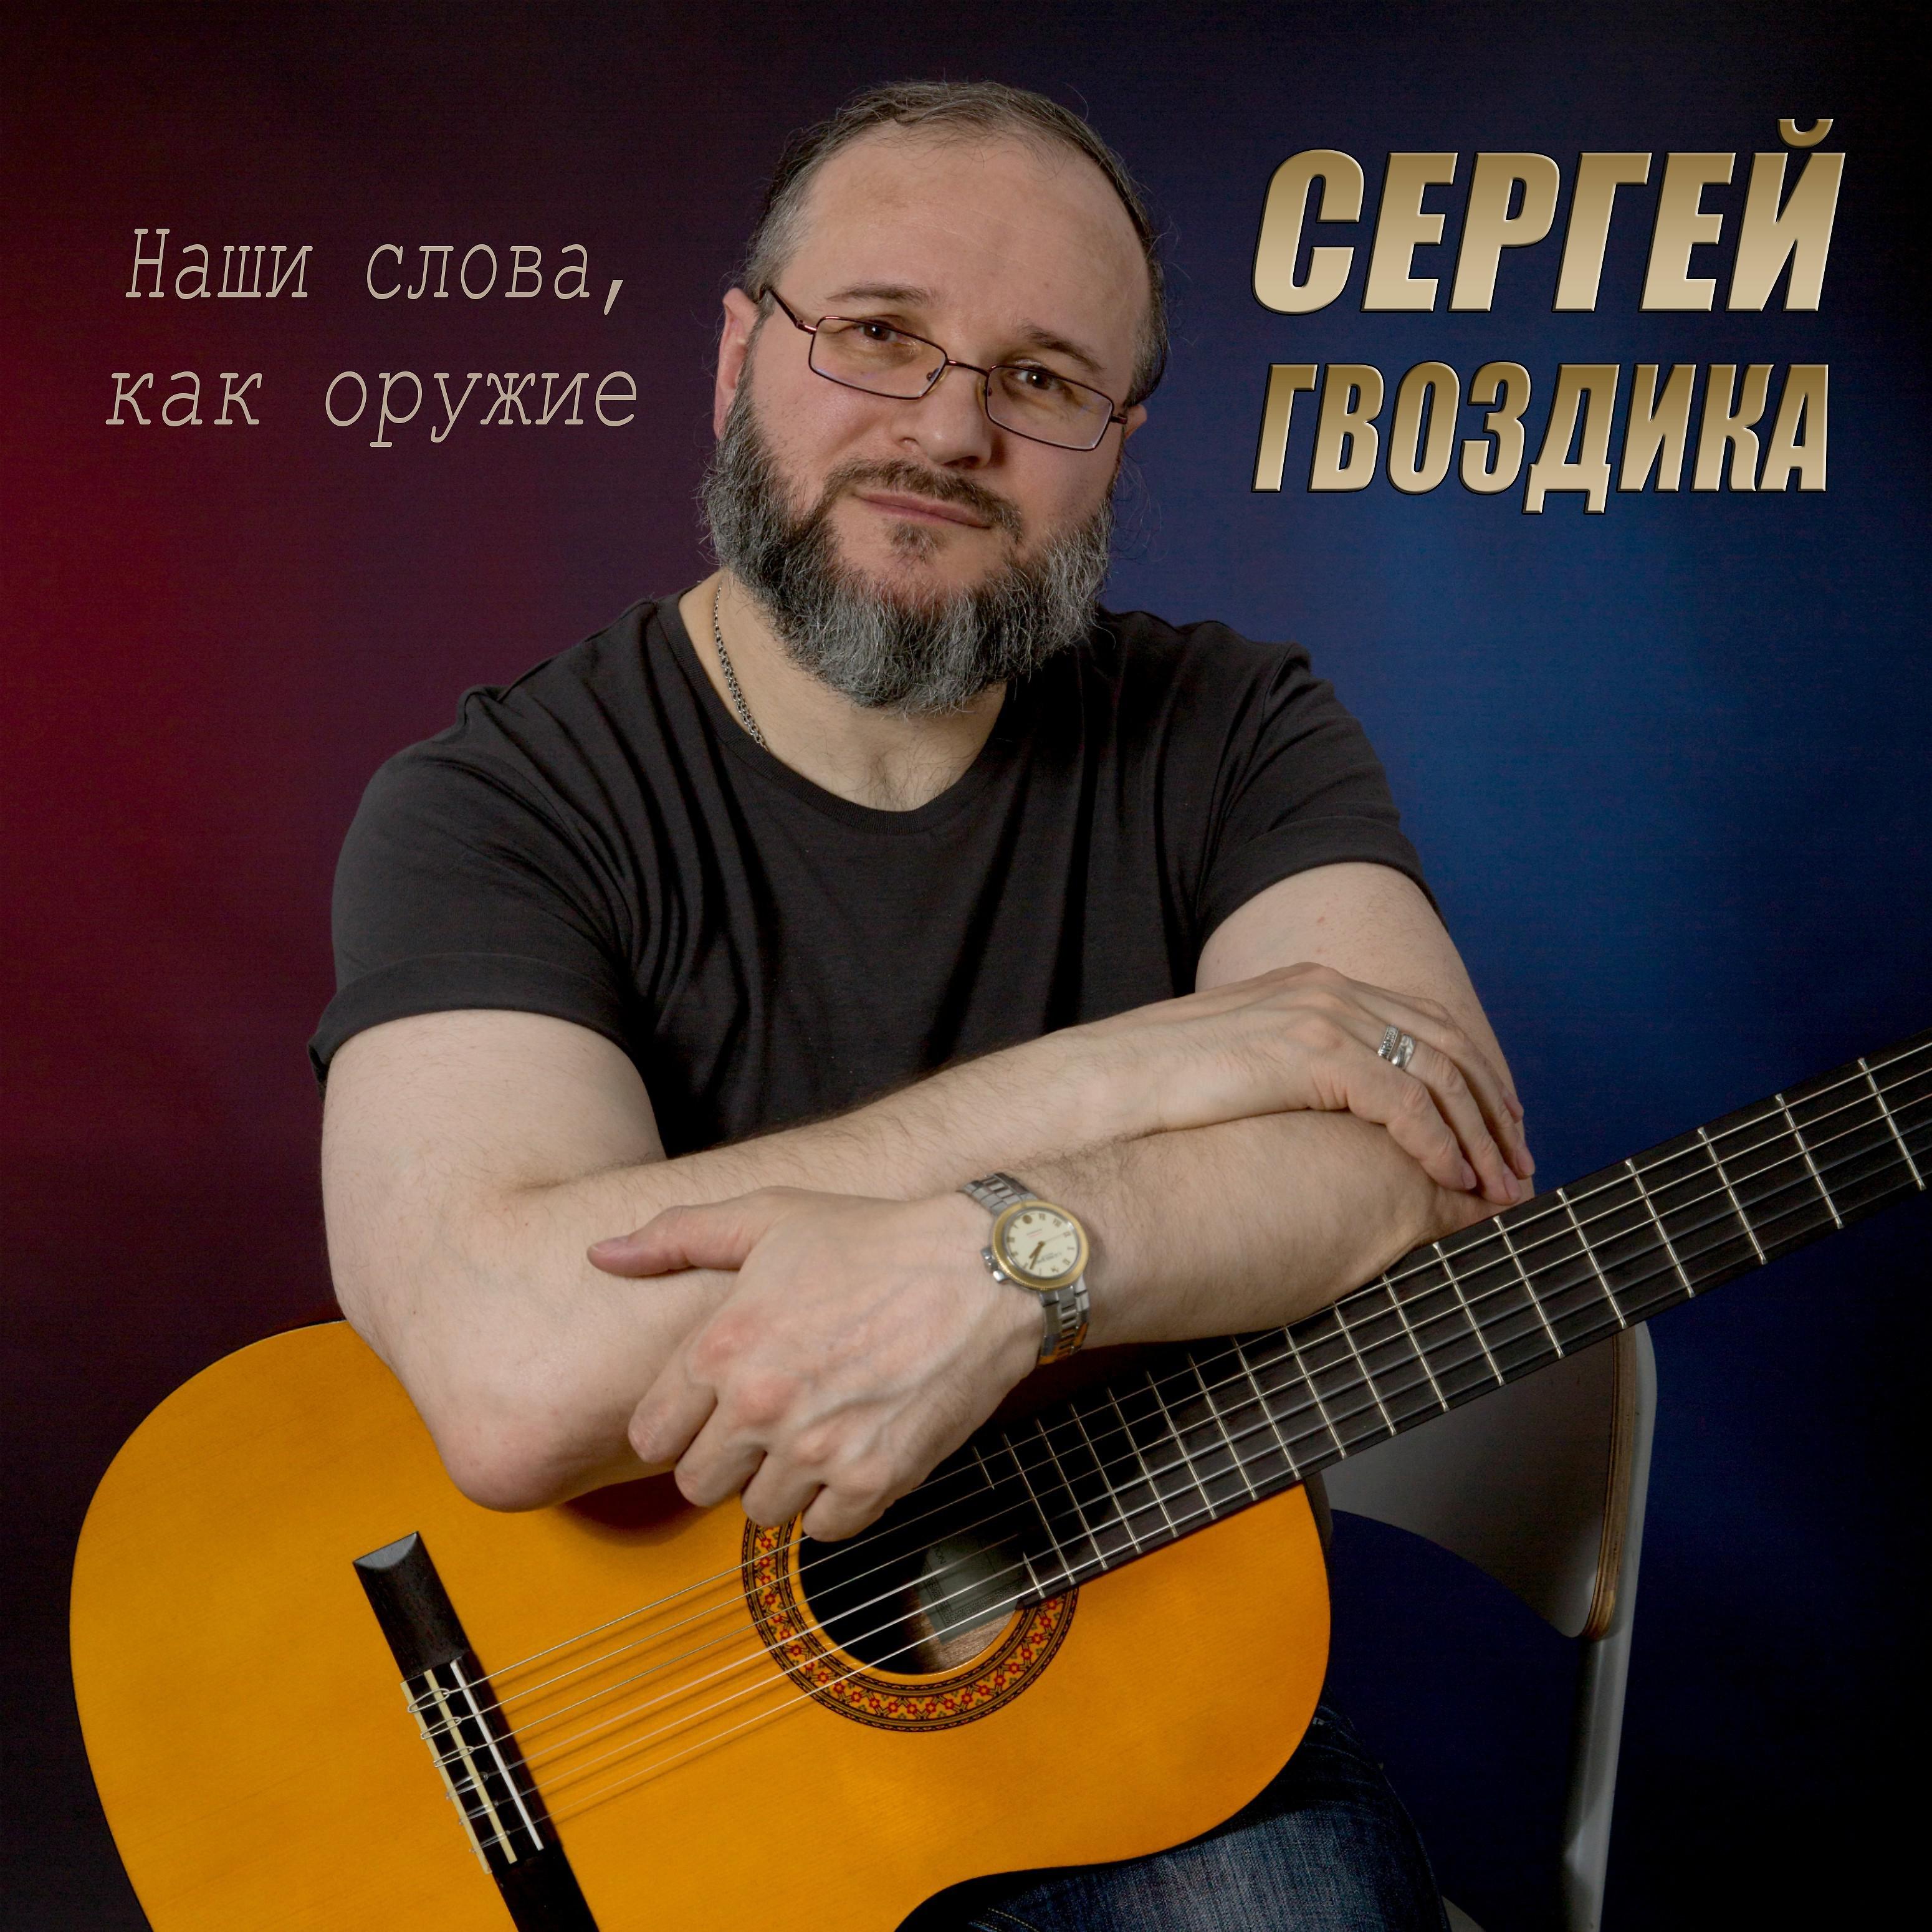 Сергей Гвоздика все песни в mp3